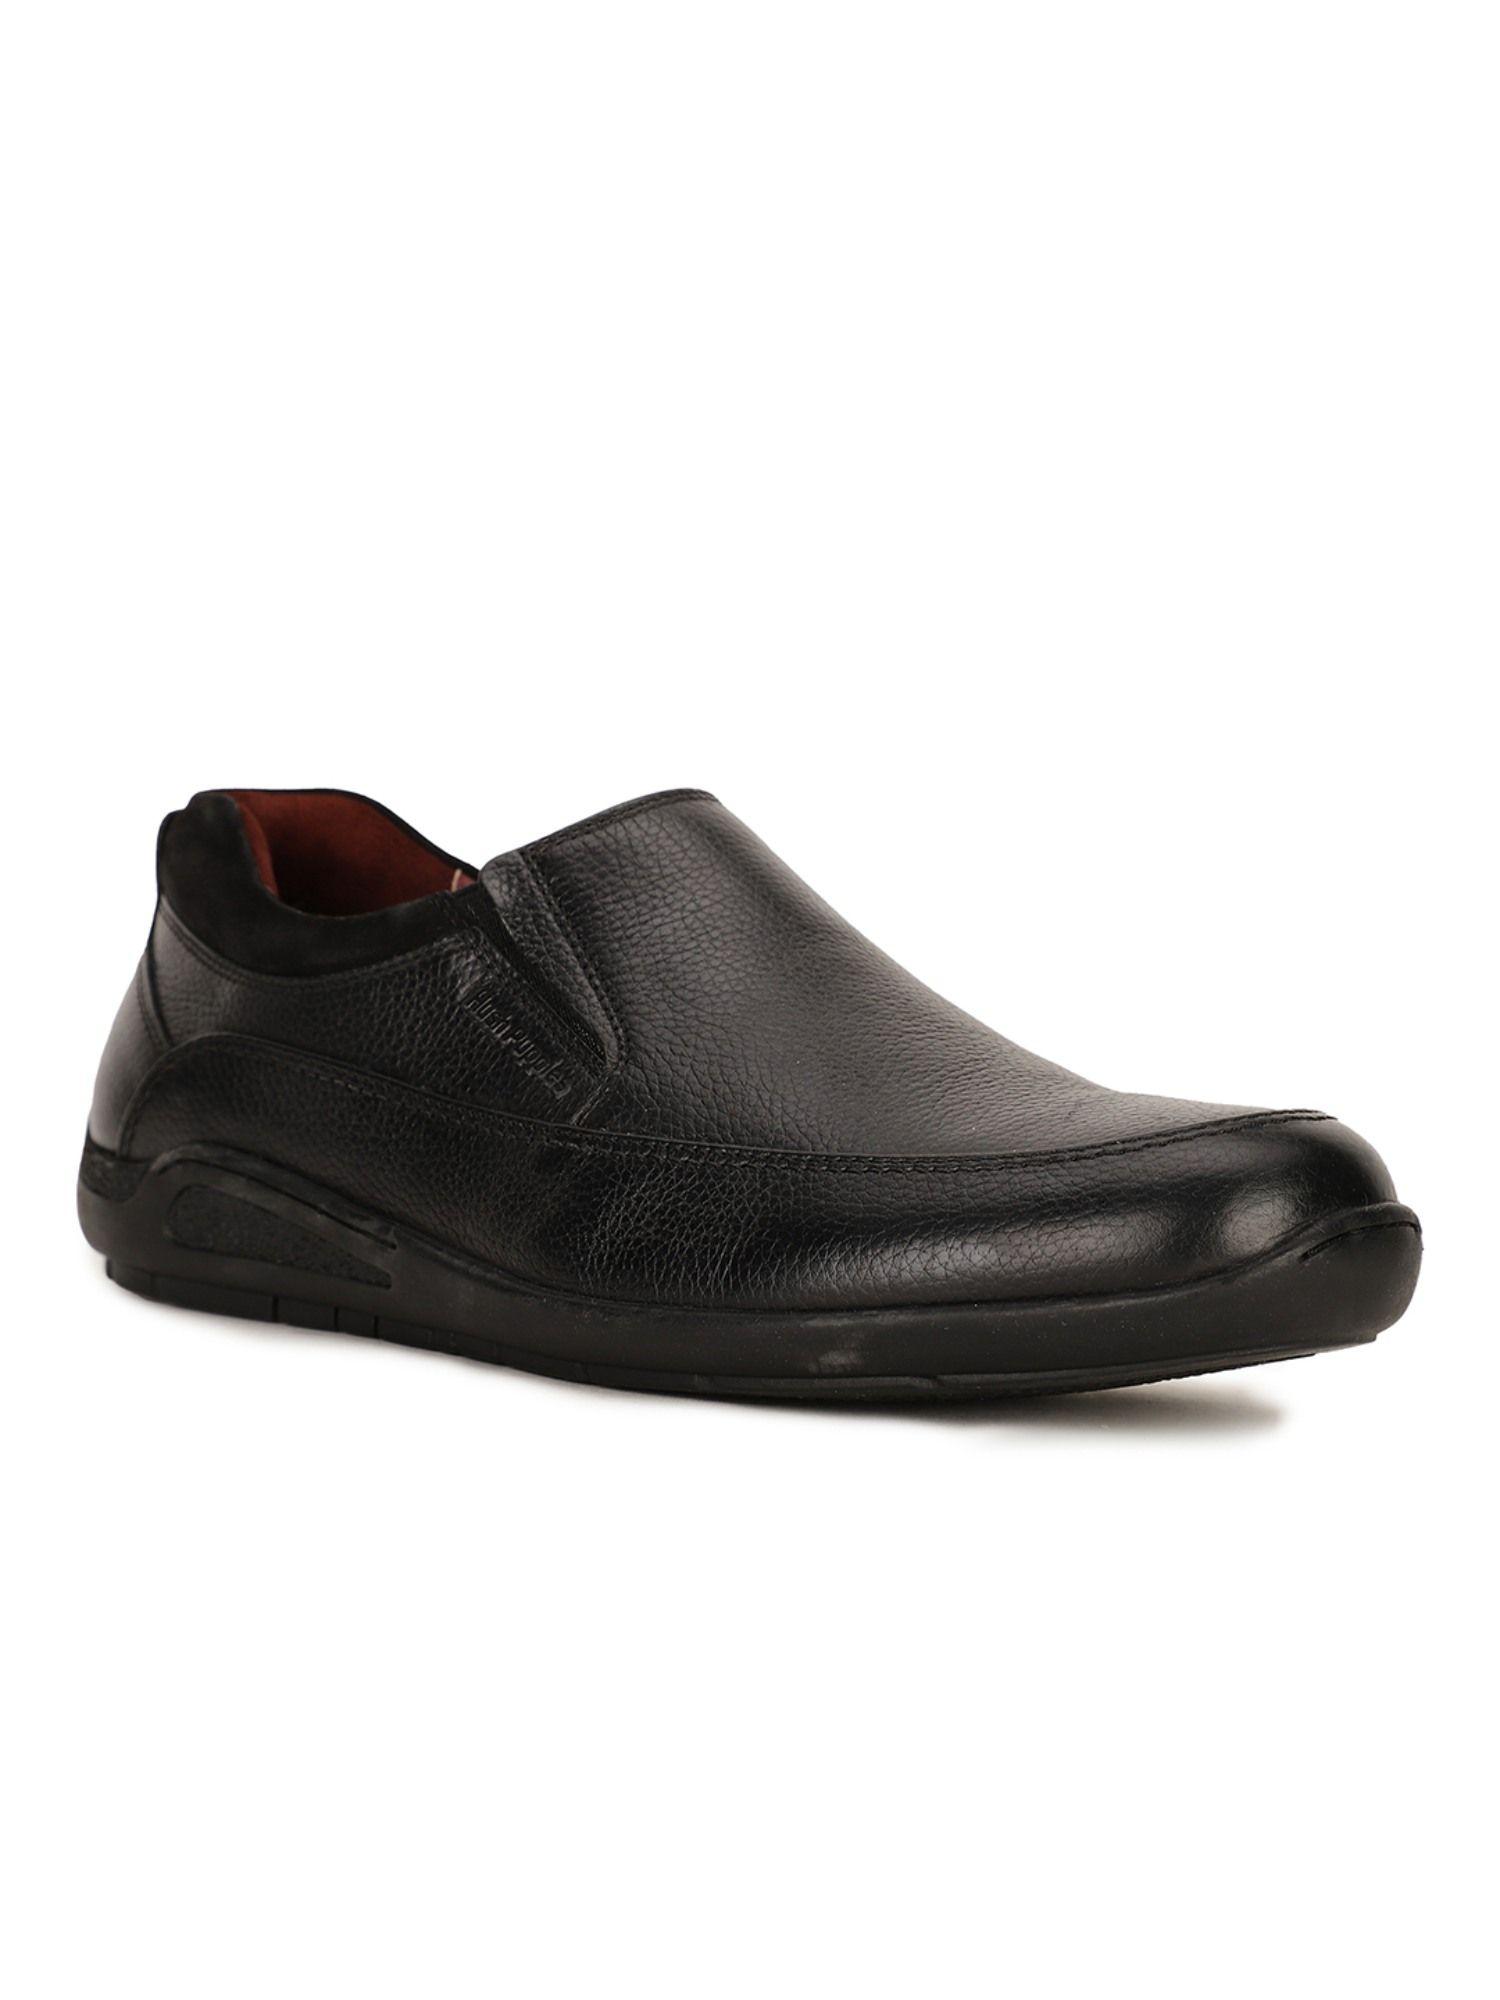 men black slip-on formal shoes